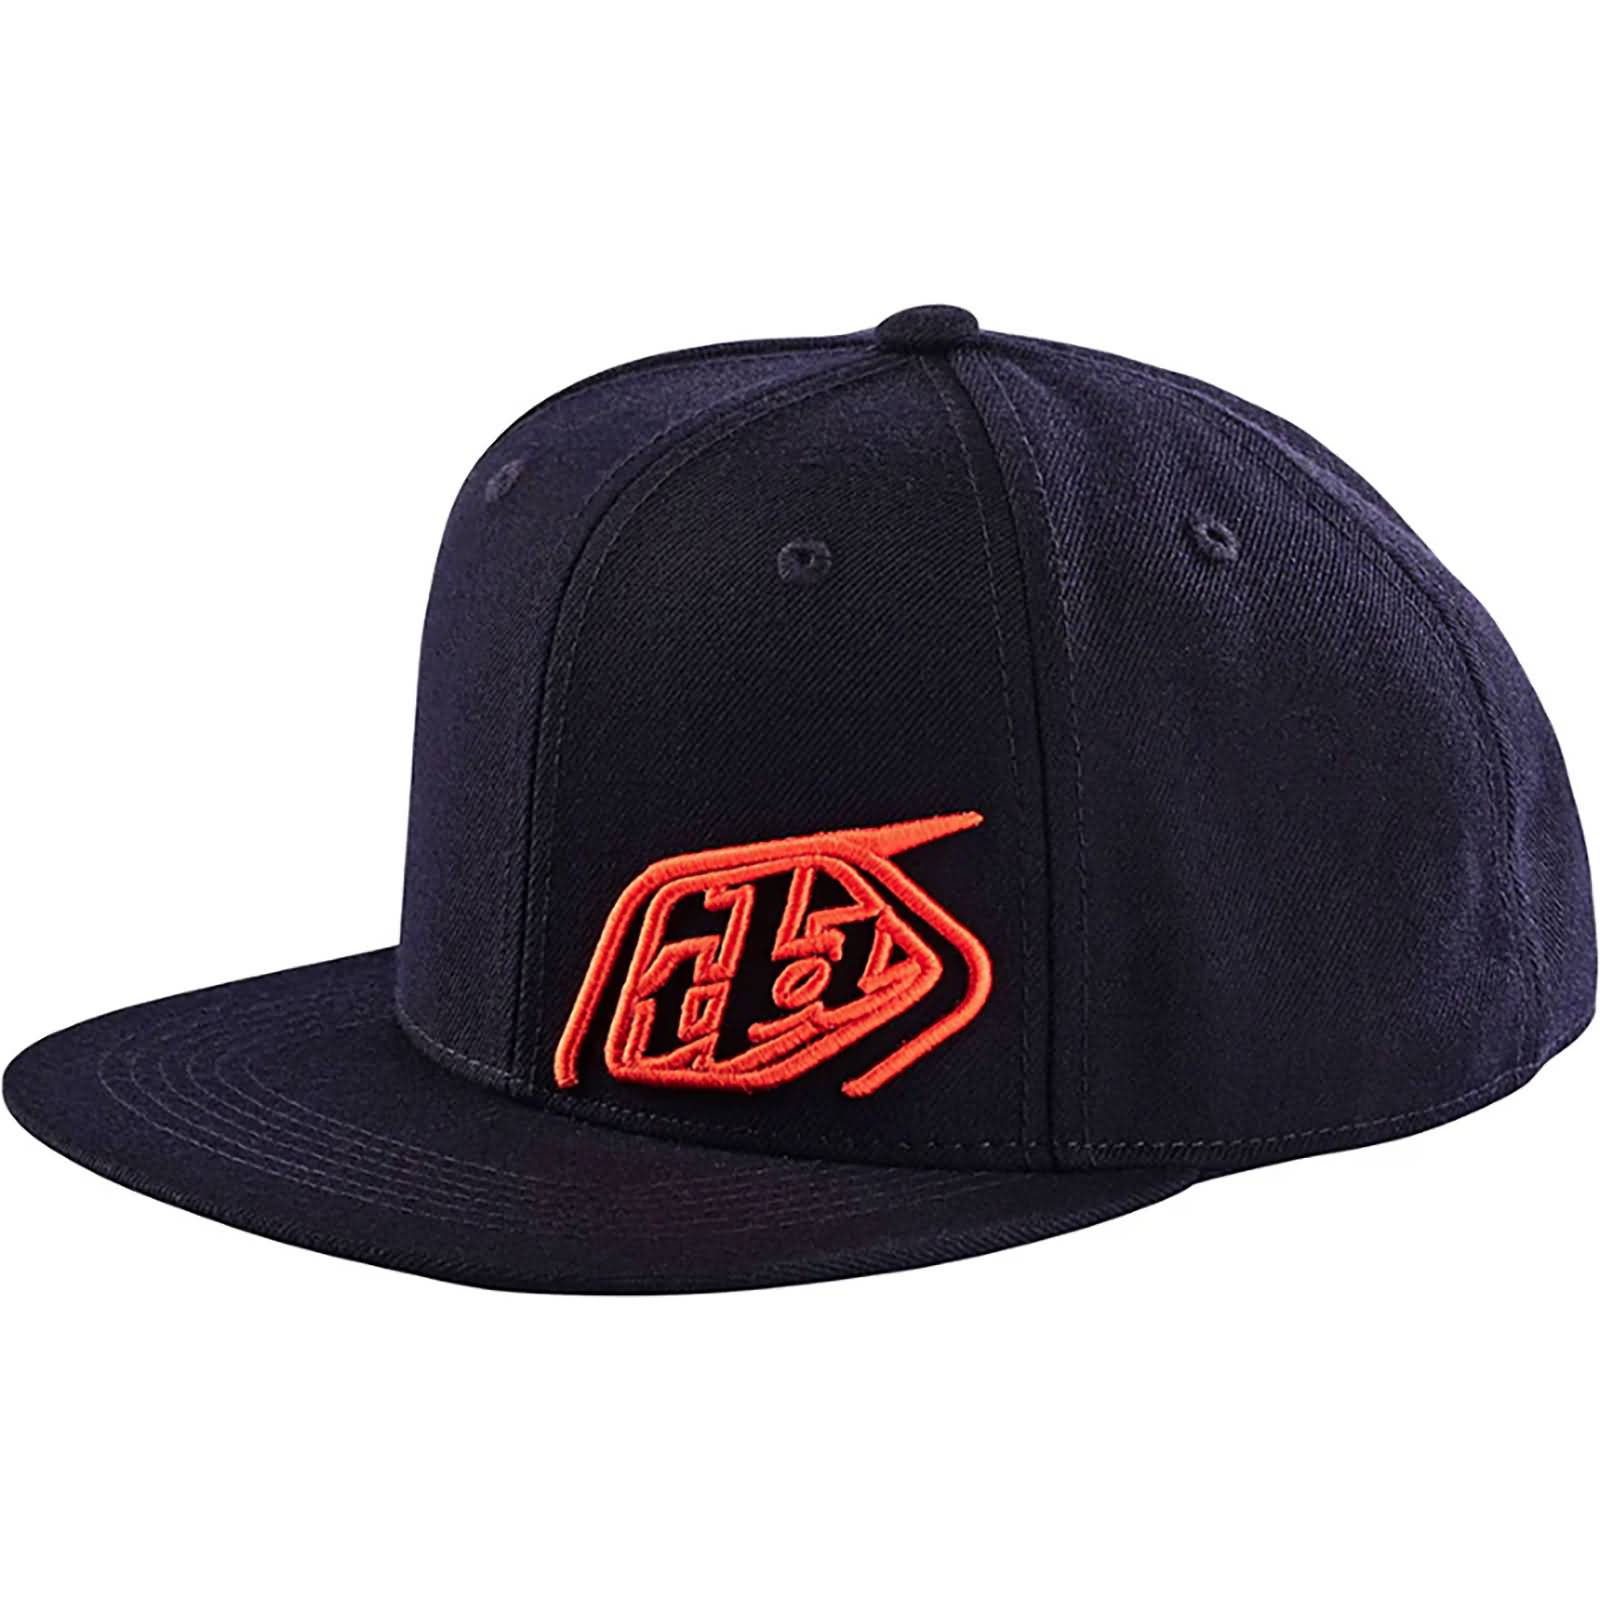 Troy Lee Designs Slice Men's Snapback Adjustable Hats-750217010